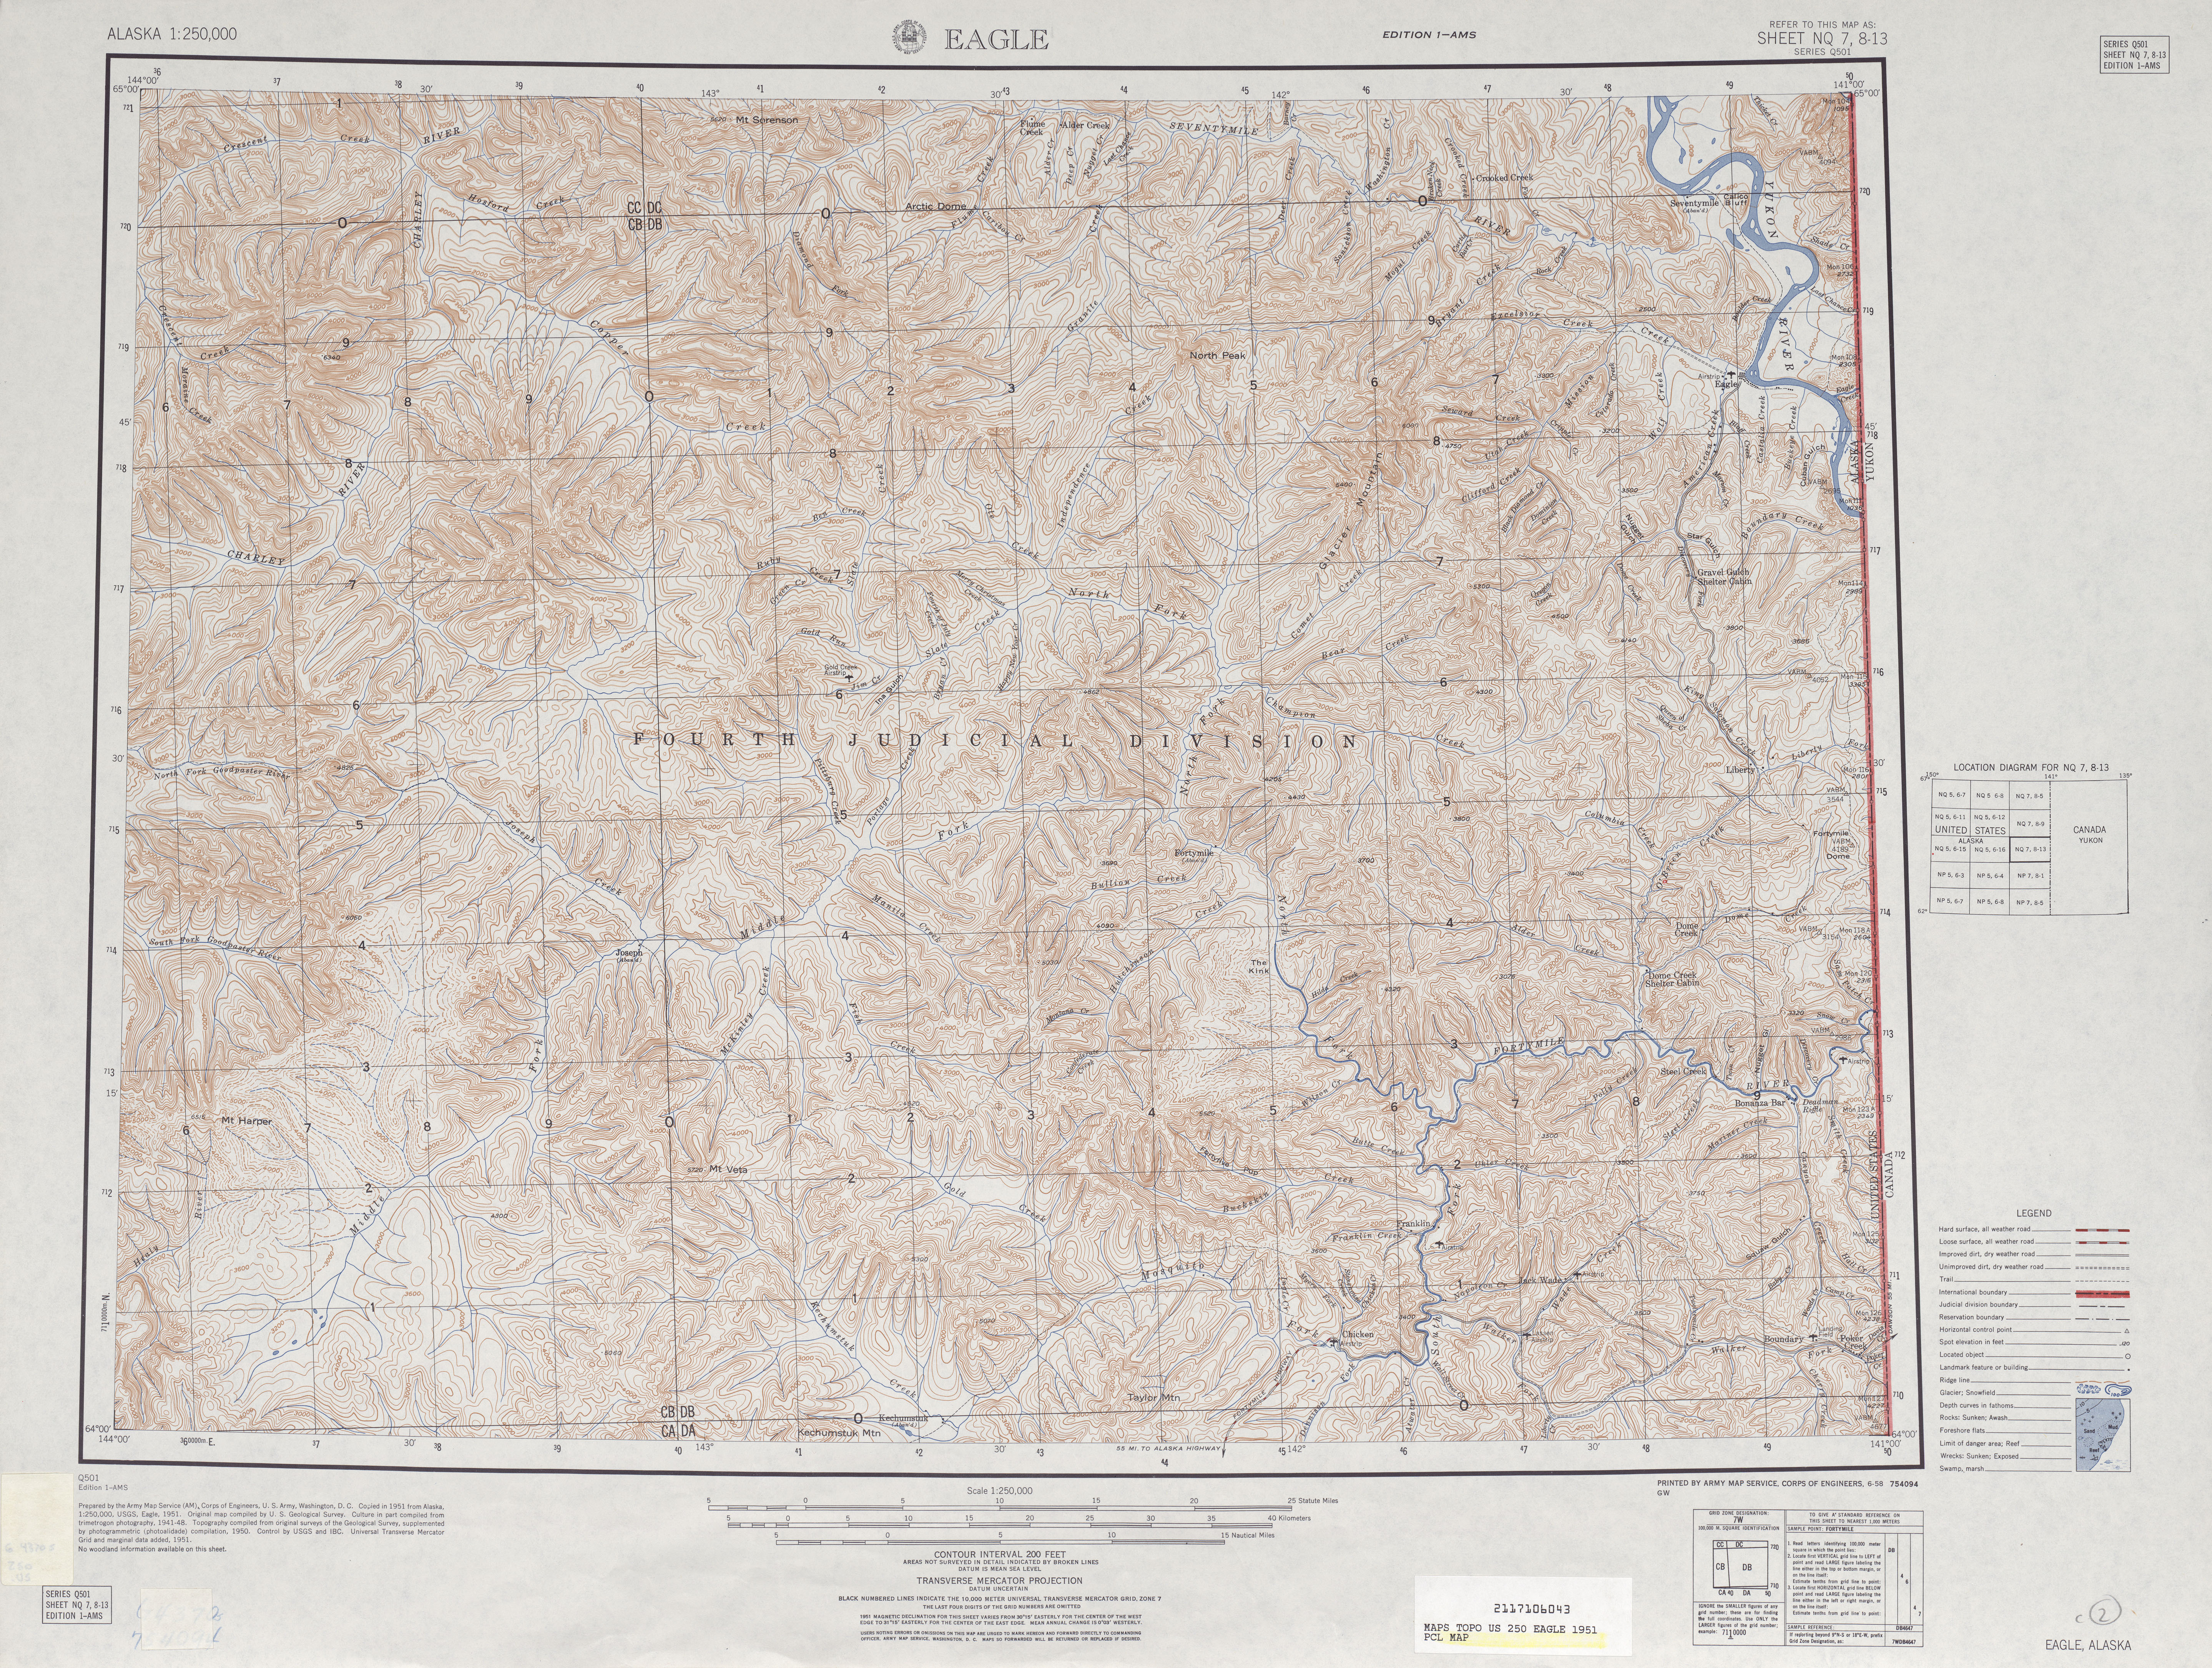 Hoja Eagle del Mapa Topográfico de los Estados Unidos 1951